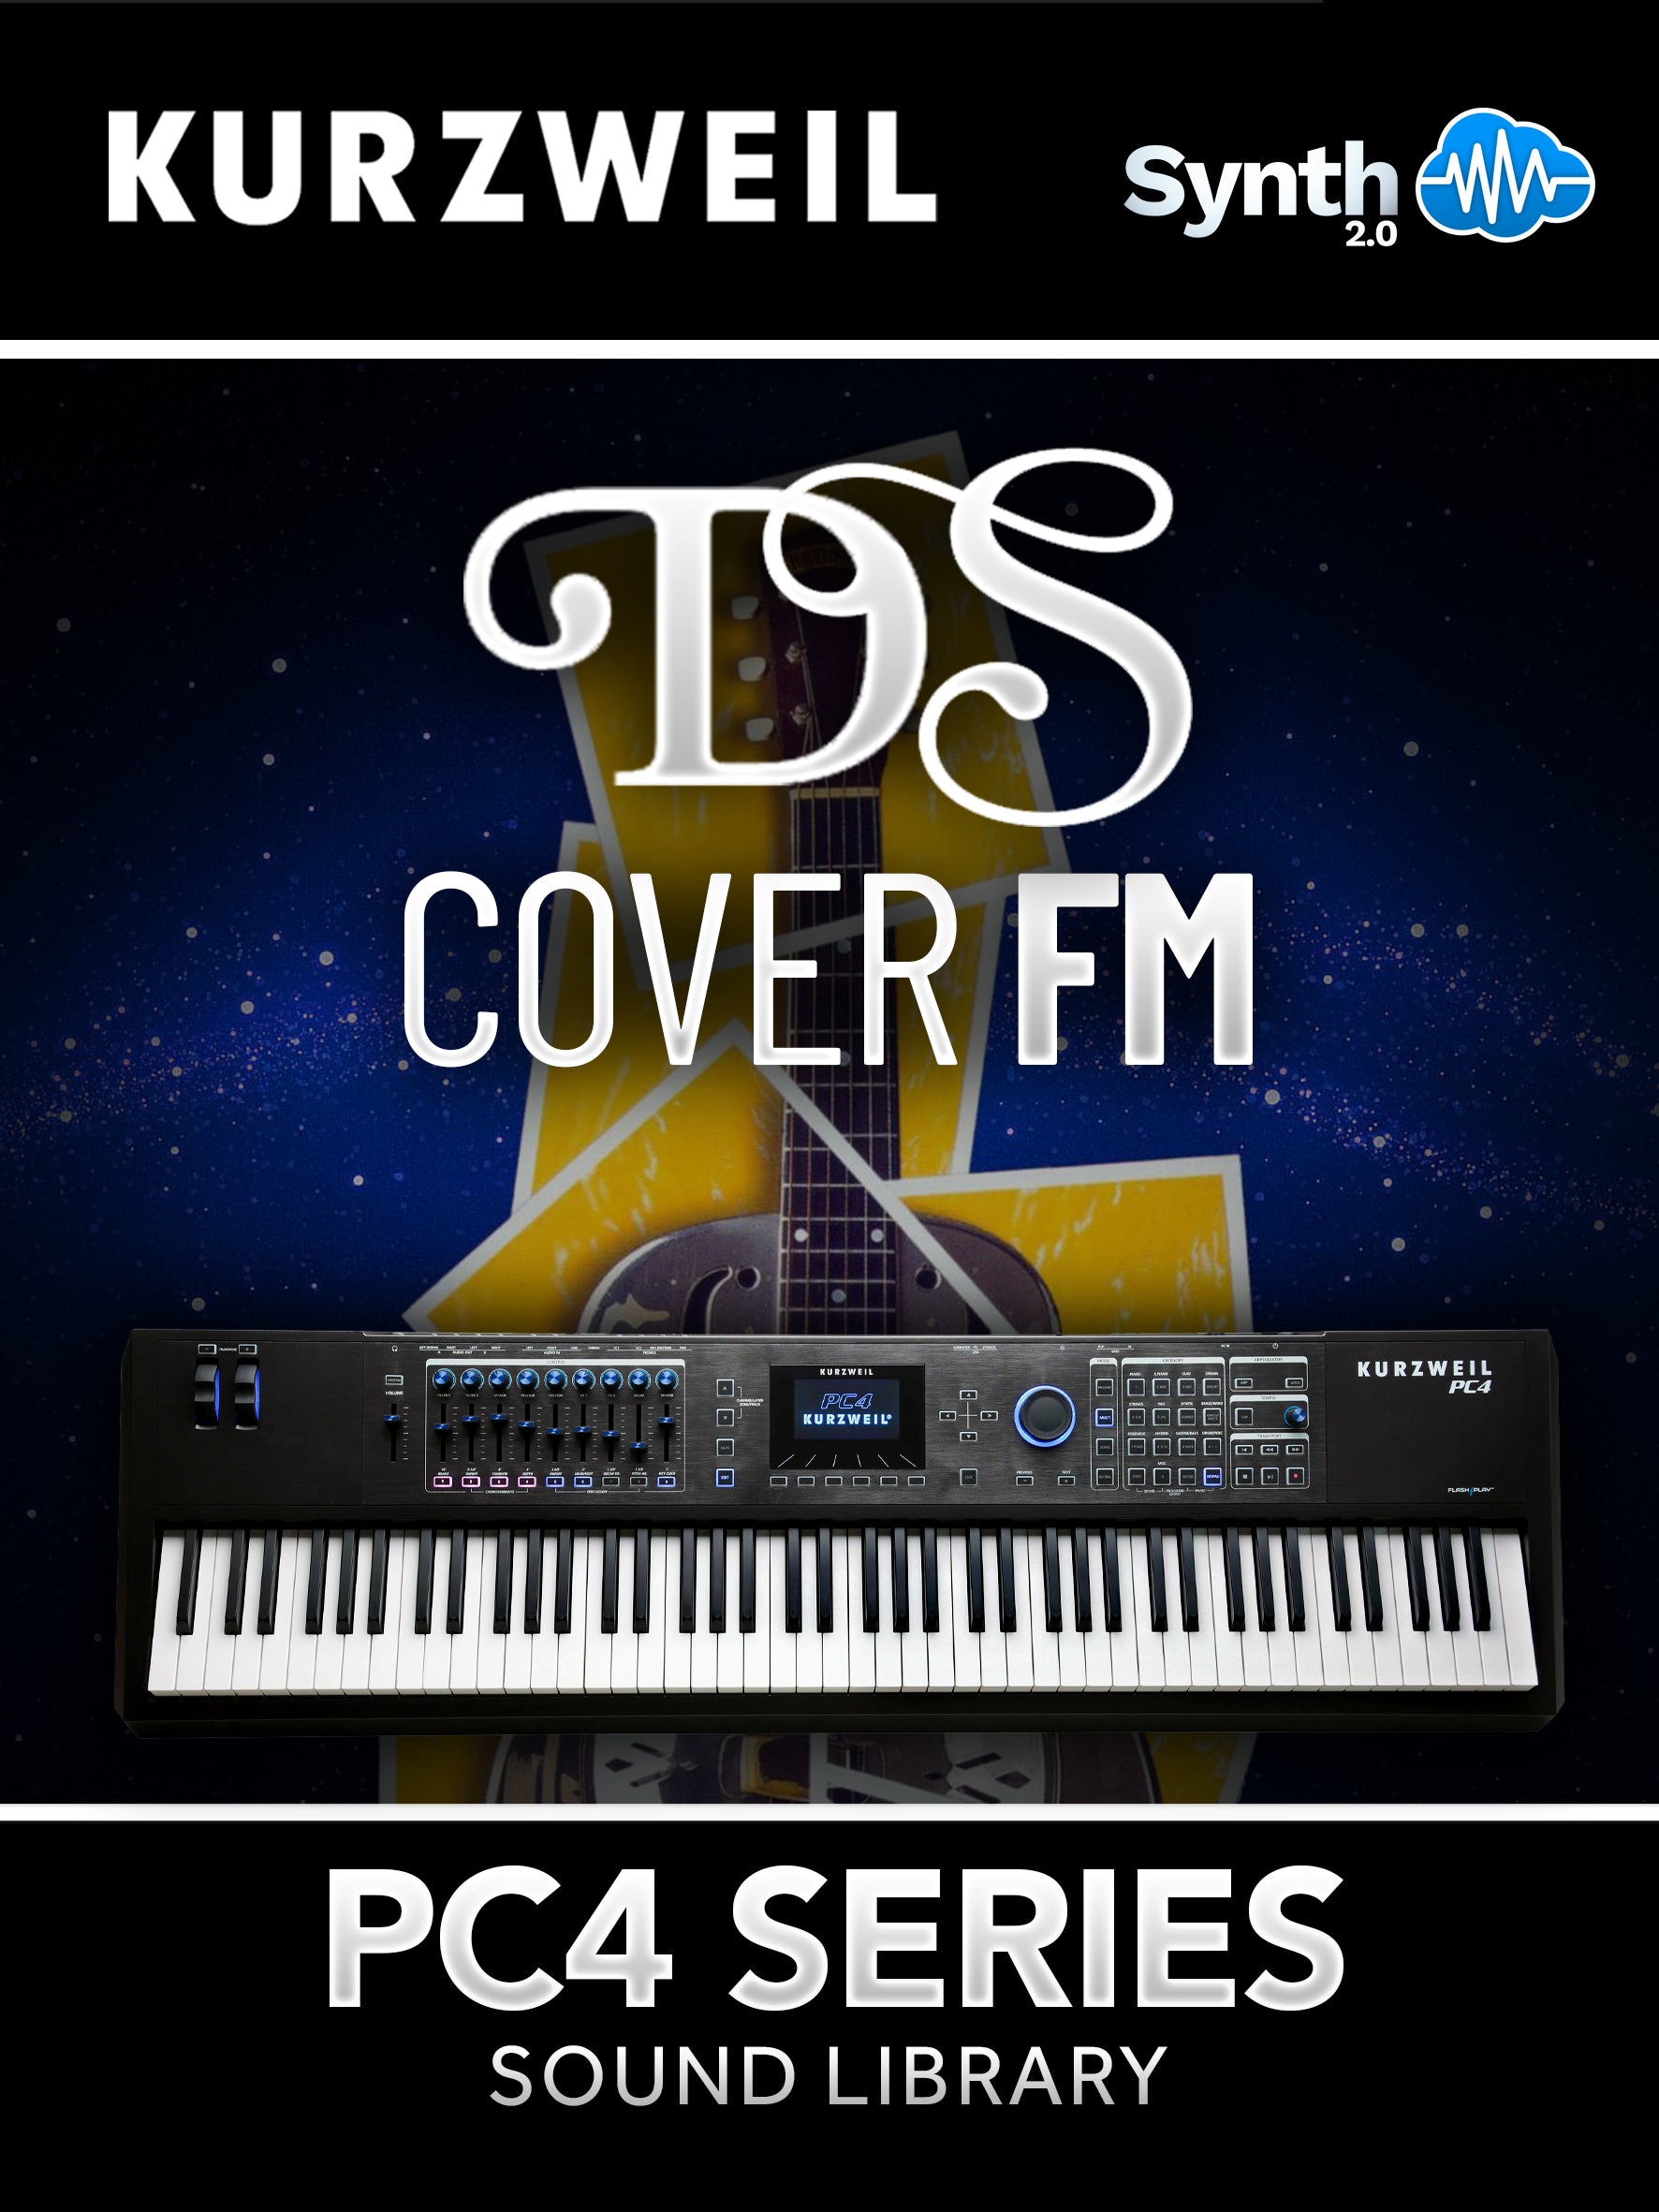 PC4021 - DS Cover FM - Kurzweil PC4 Series ( 21 presets )